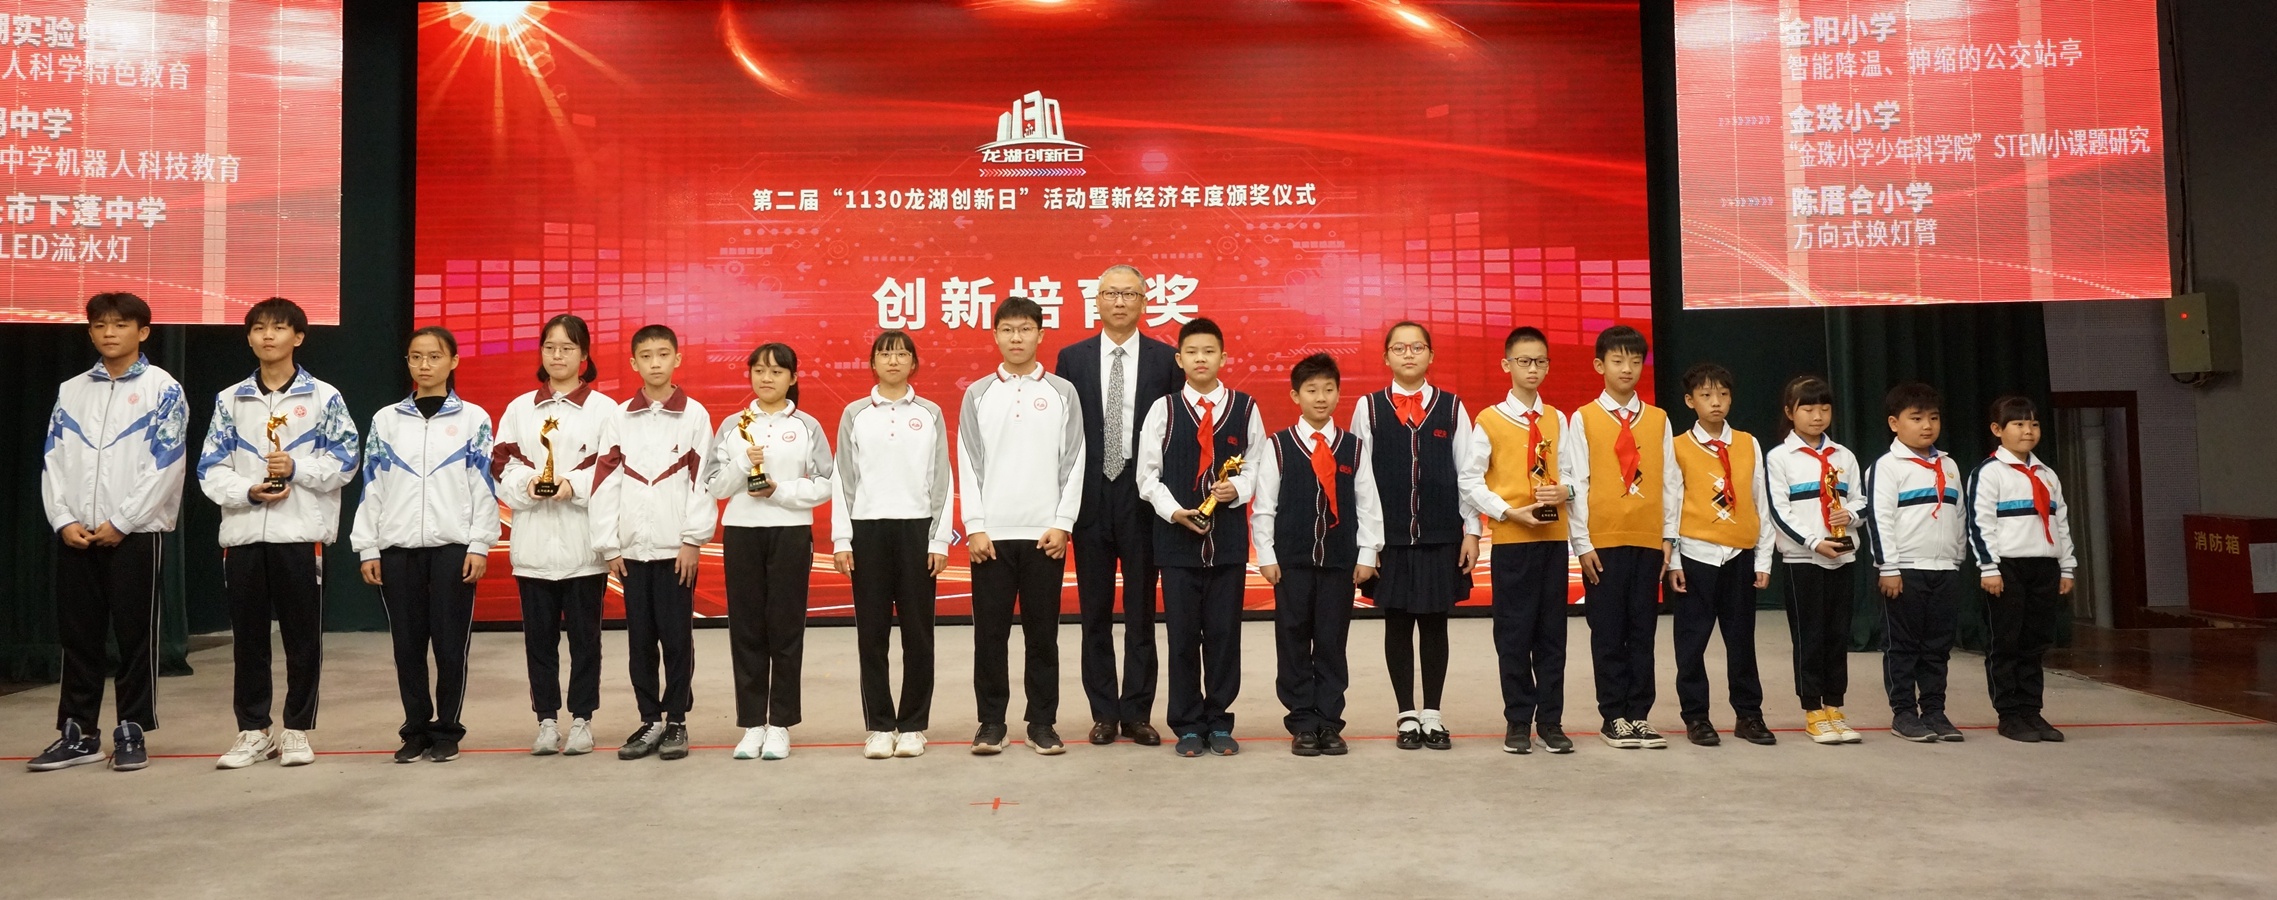 创新培育奖由一群少年儿童获得。